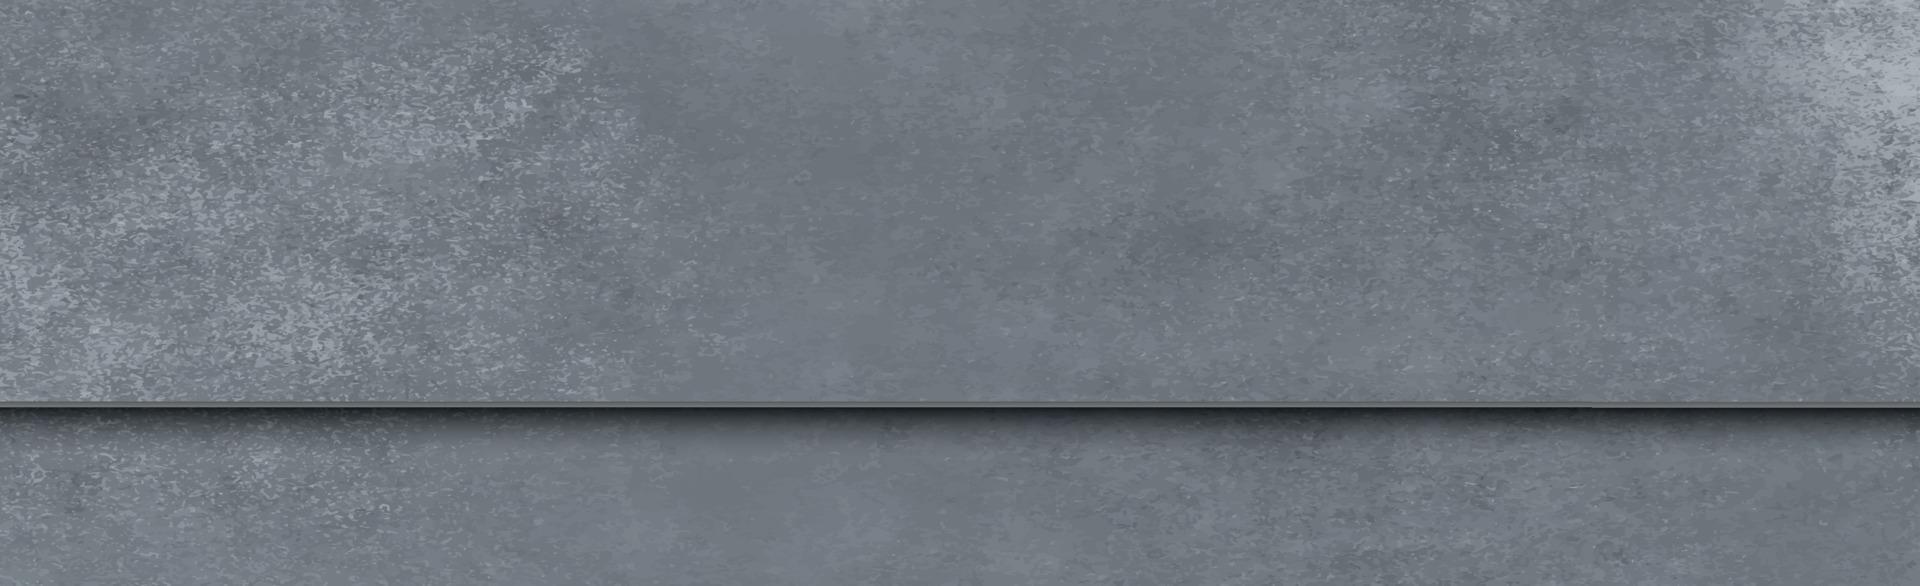 trama panoramica di cemento grigio realistico - vettore